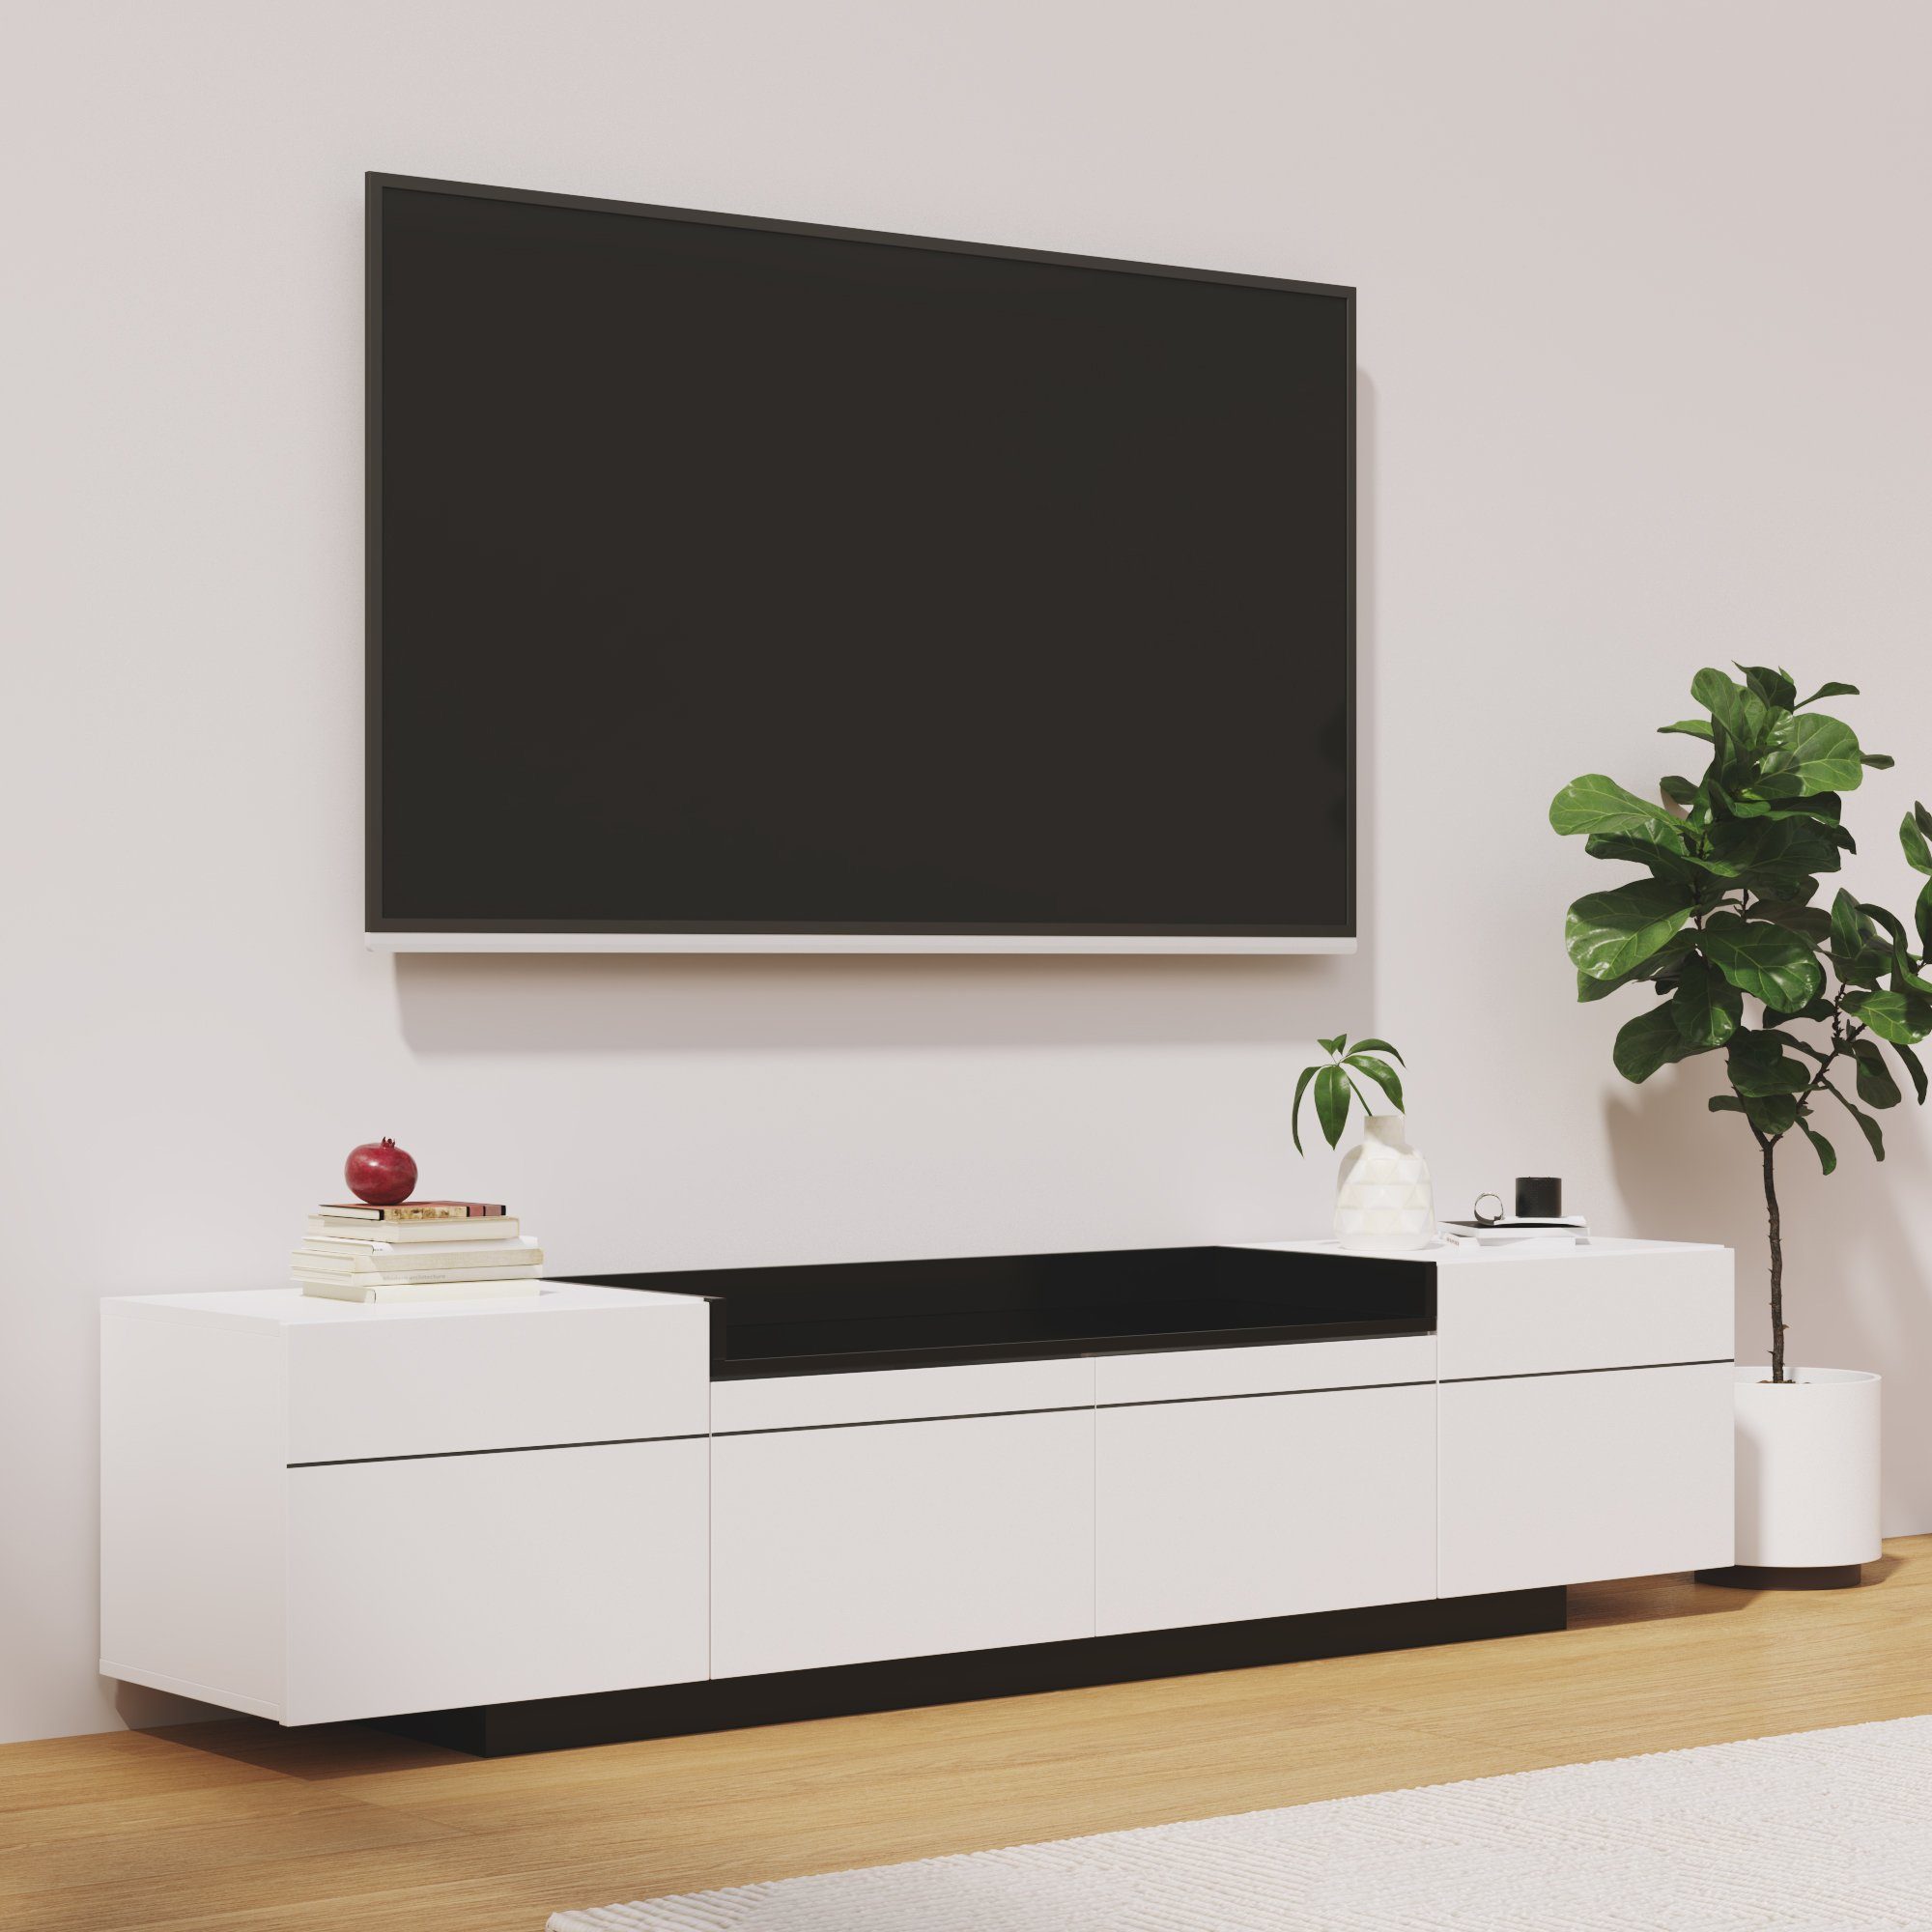 Odikalo TV-Schrank Sideboard Lowboard Türen Stauraum Weiß Colorblock-Design Hochglanz 3